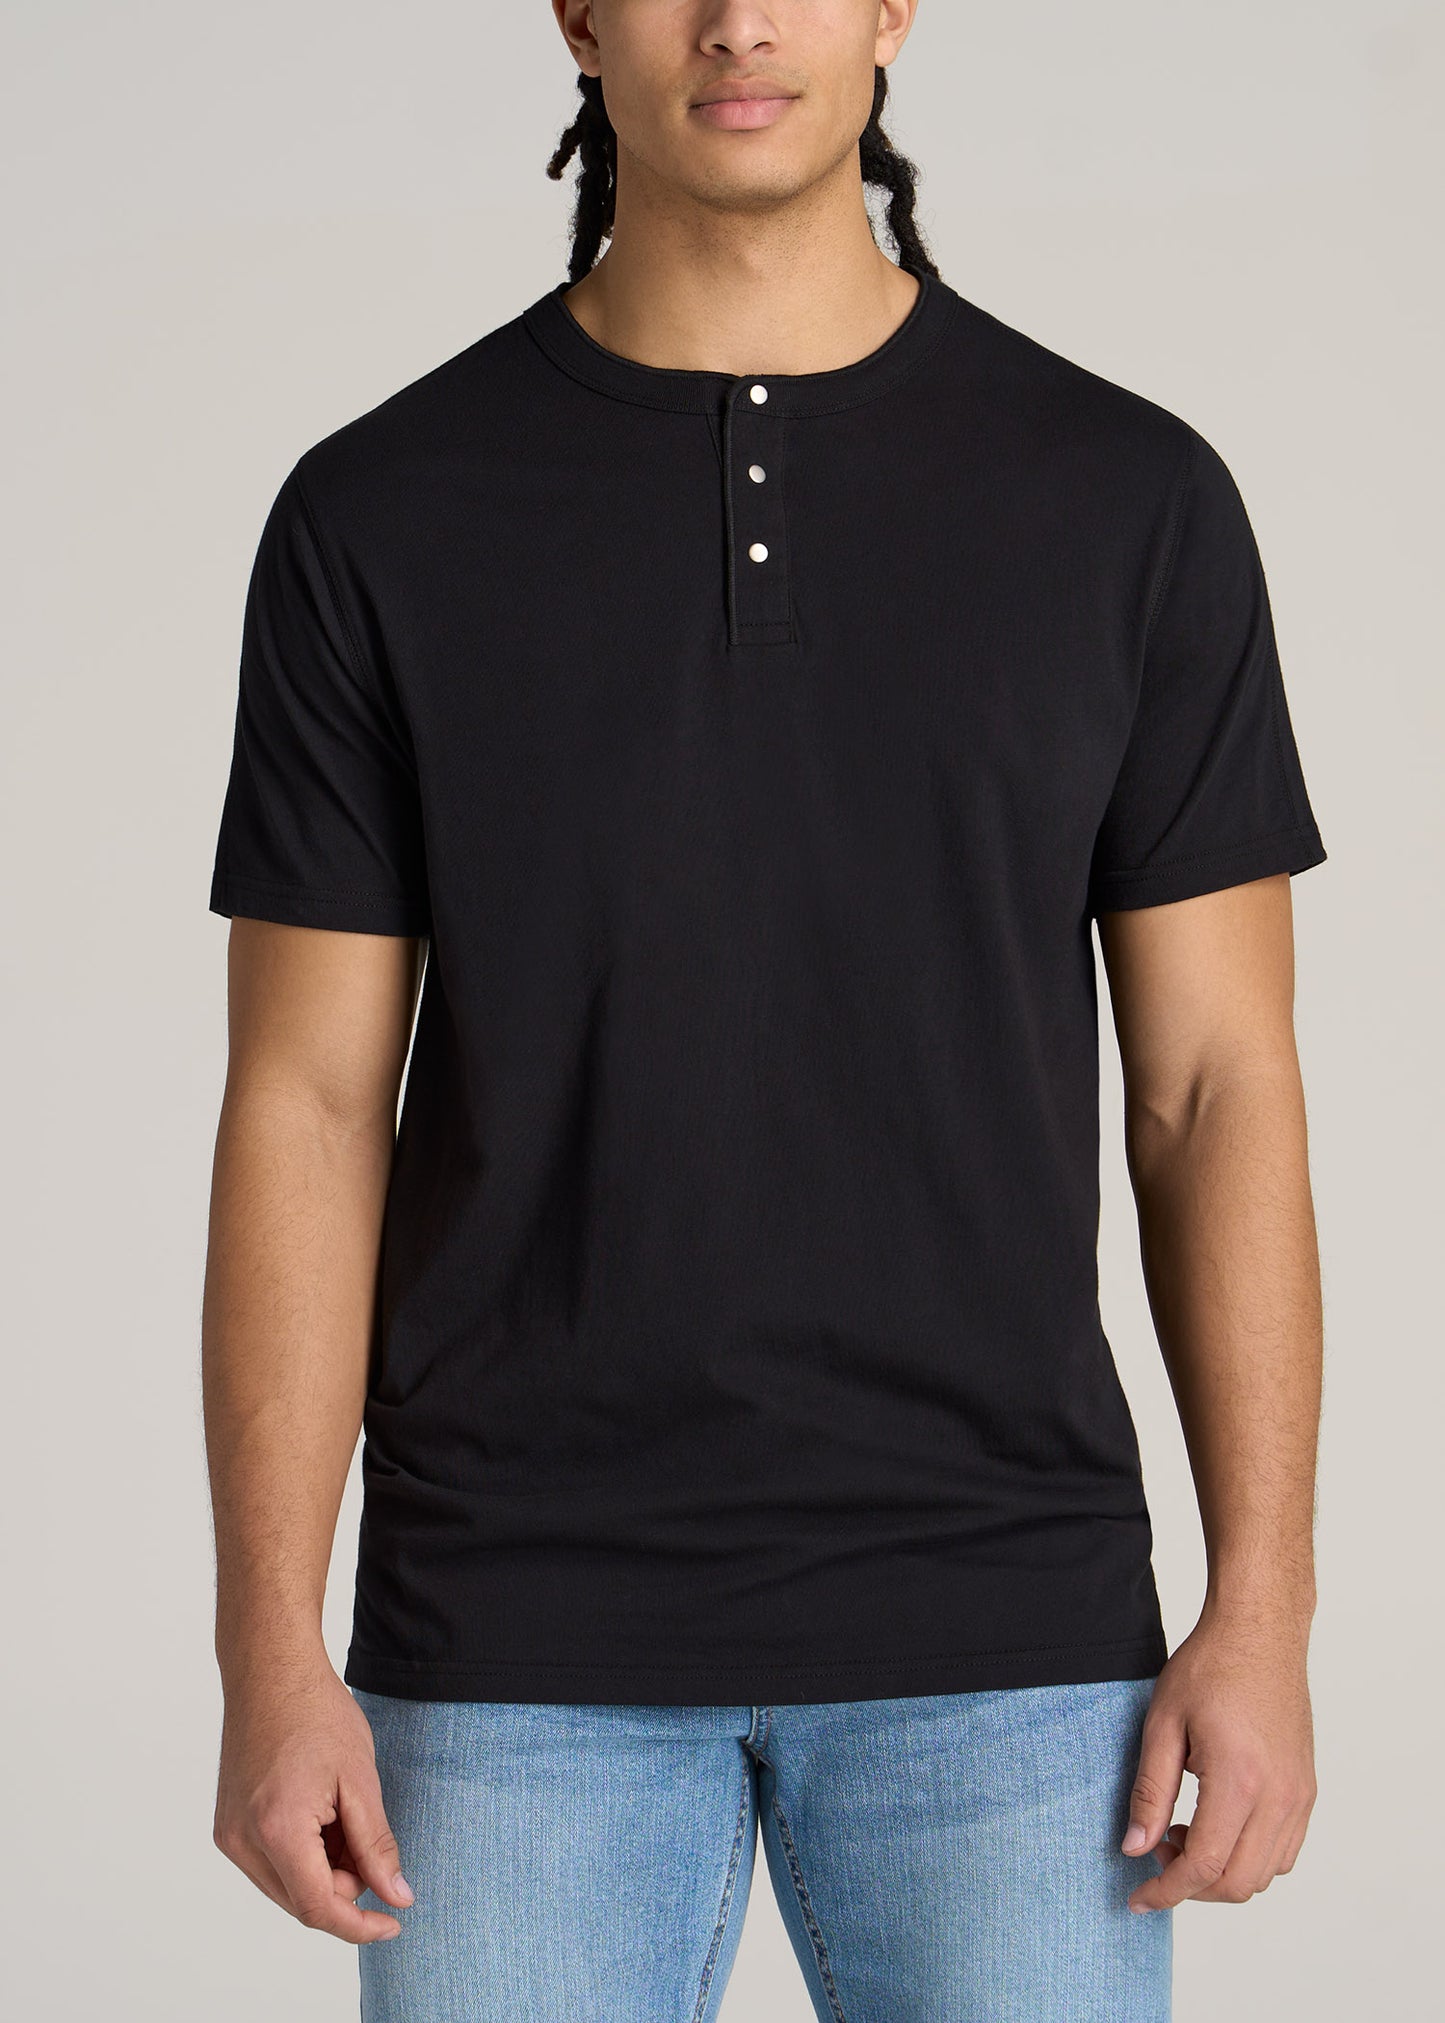 Men's Tall T Shirts: Jersey Henley Black Tee